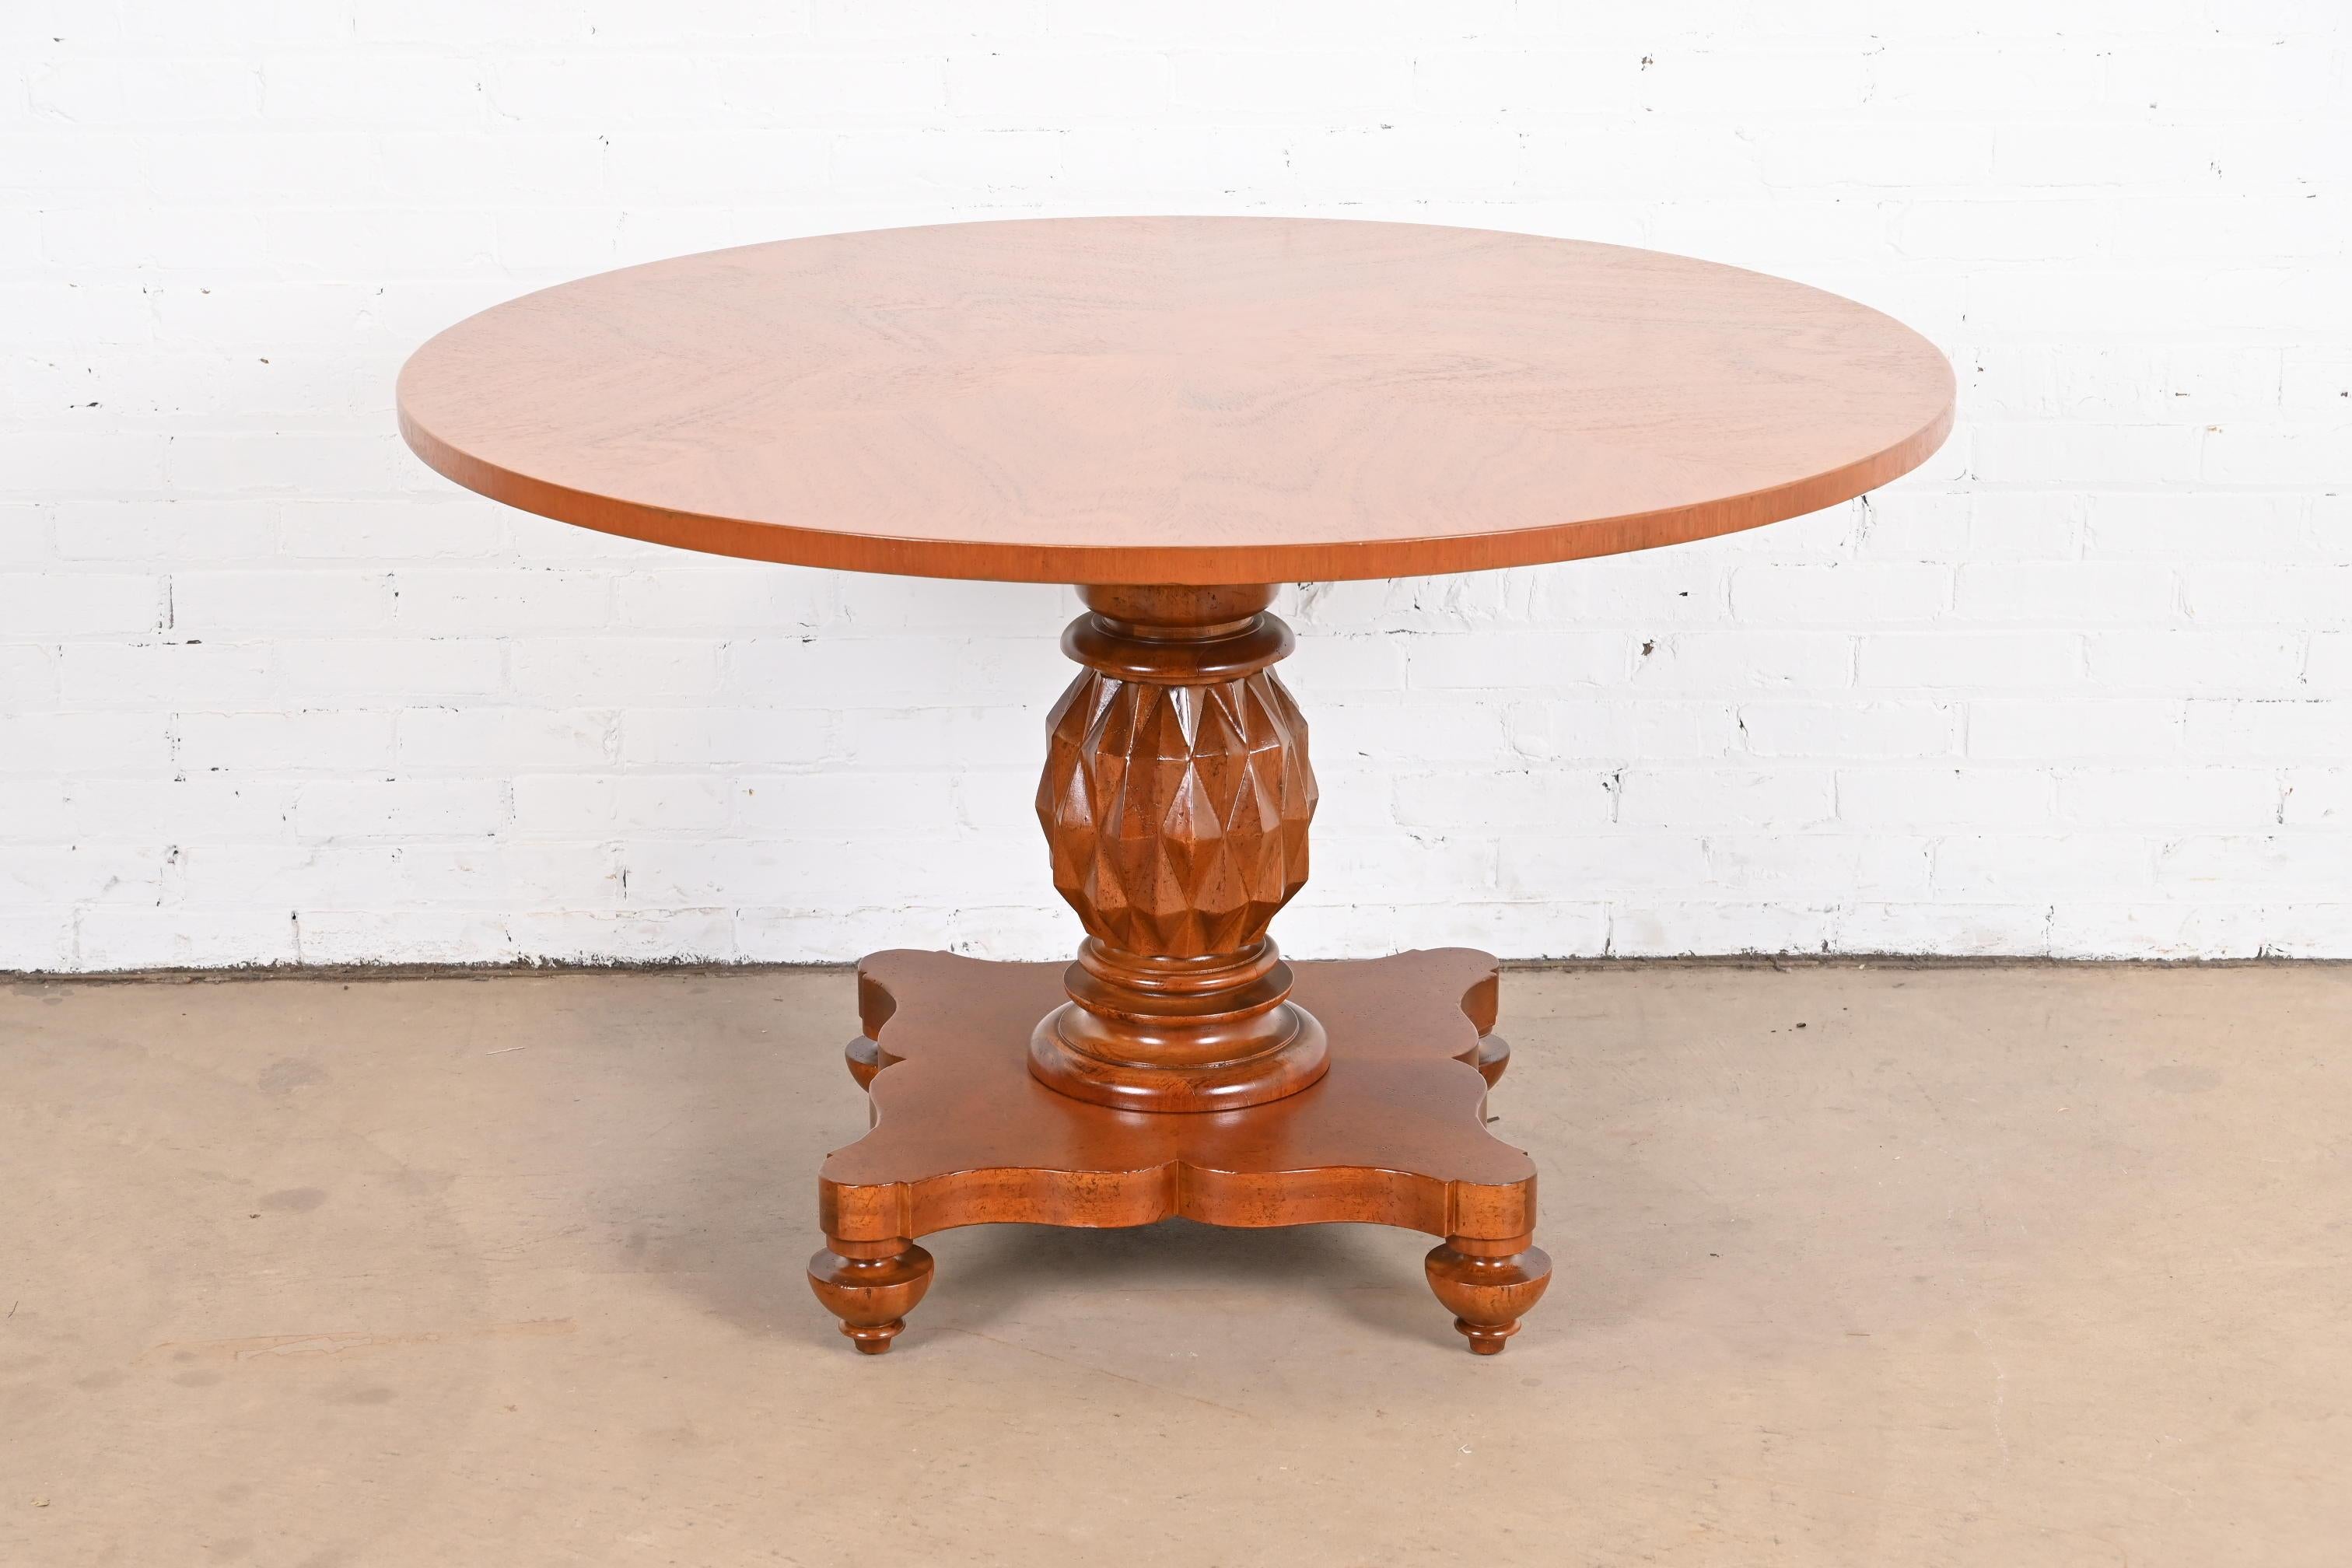 Magnifique table ronde à piédestal de style Empire italien ou néoclassique pour le petit-déjeuner, le jeu ou le centre de table.

Par Baker Furniture, collection 